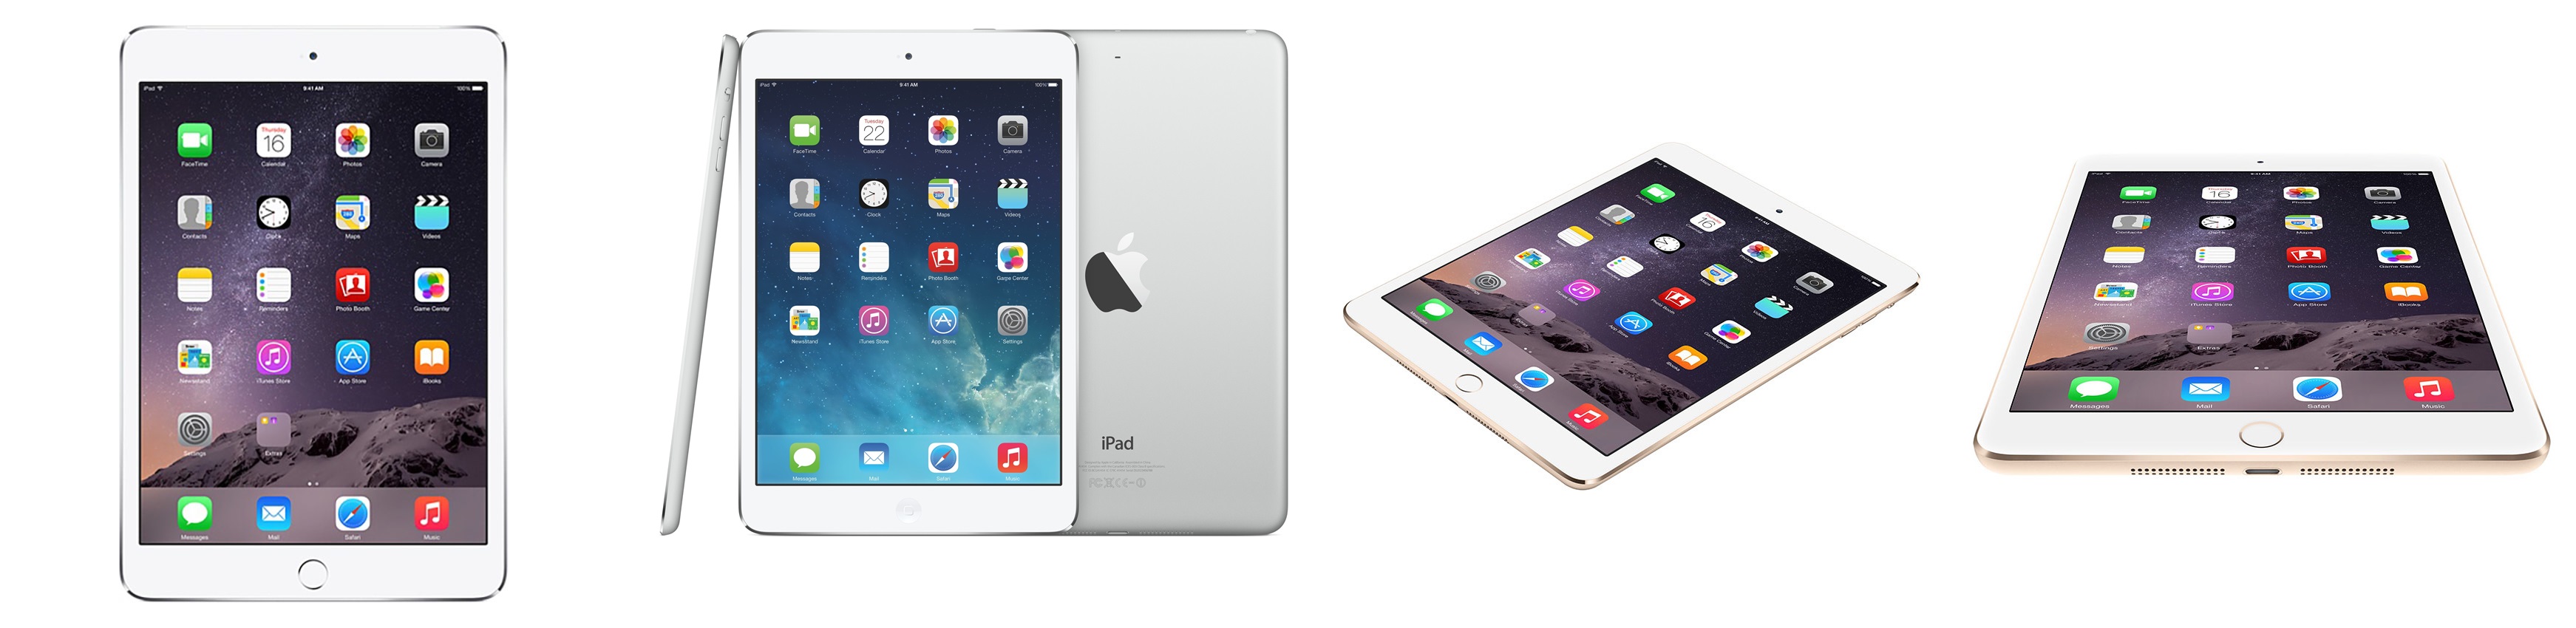 apple-ipad-air-2-wi-fi-cellular-16gb-silver-0593-983335-1-horz